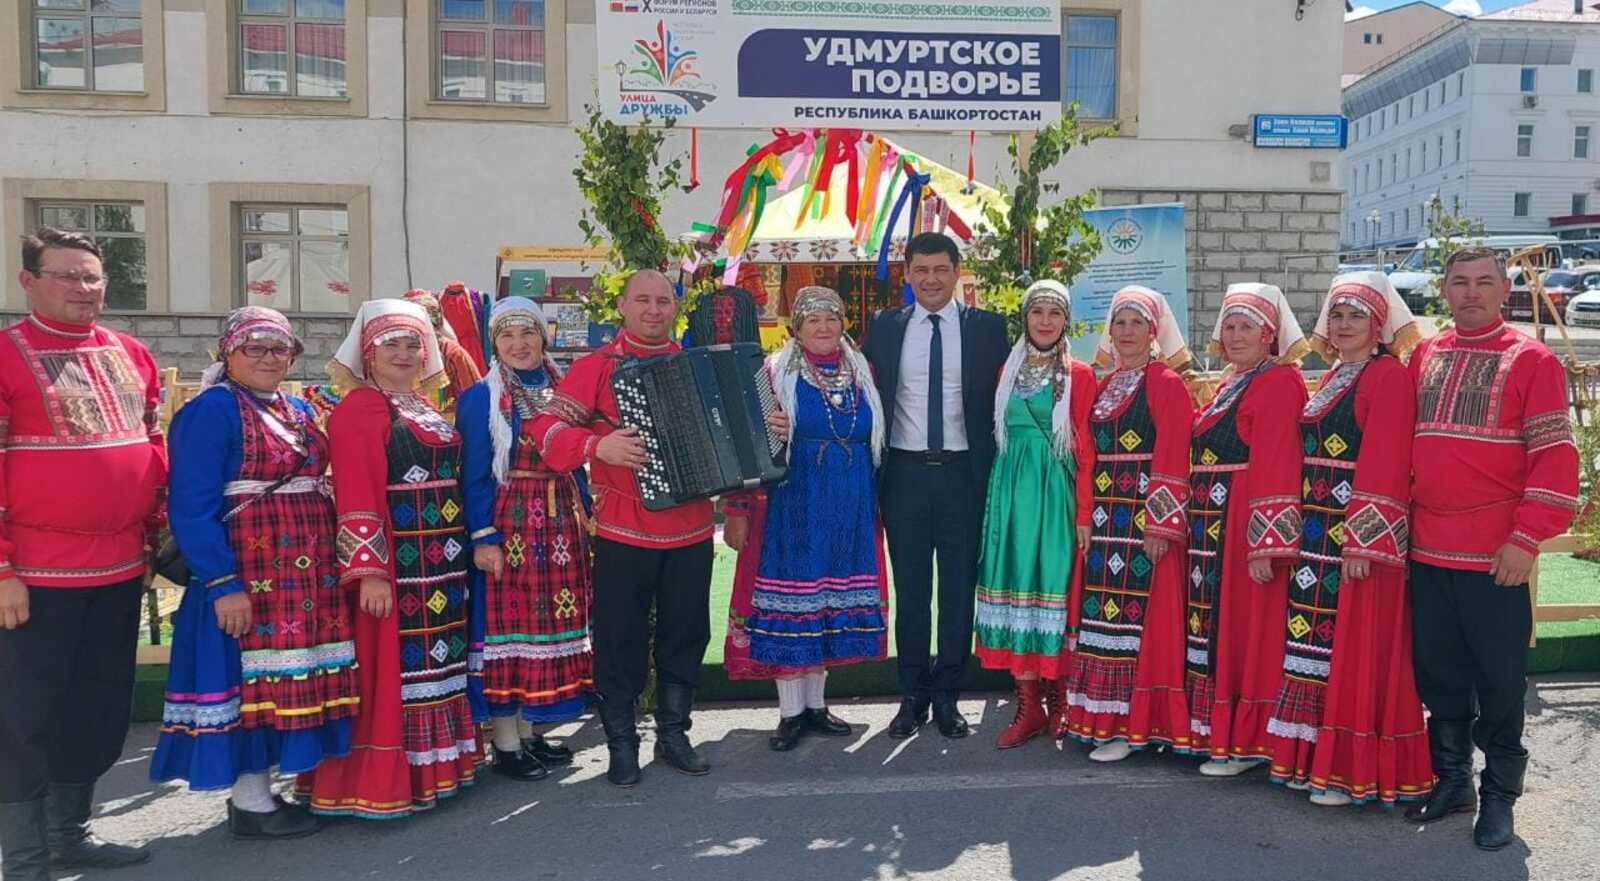 В Уфе завершился фестиваль "Улица Дружбы"